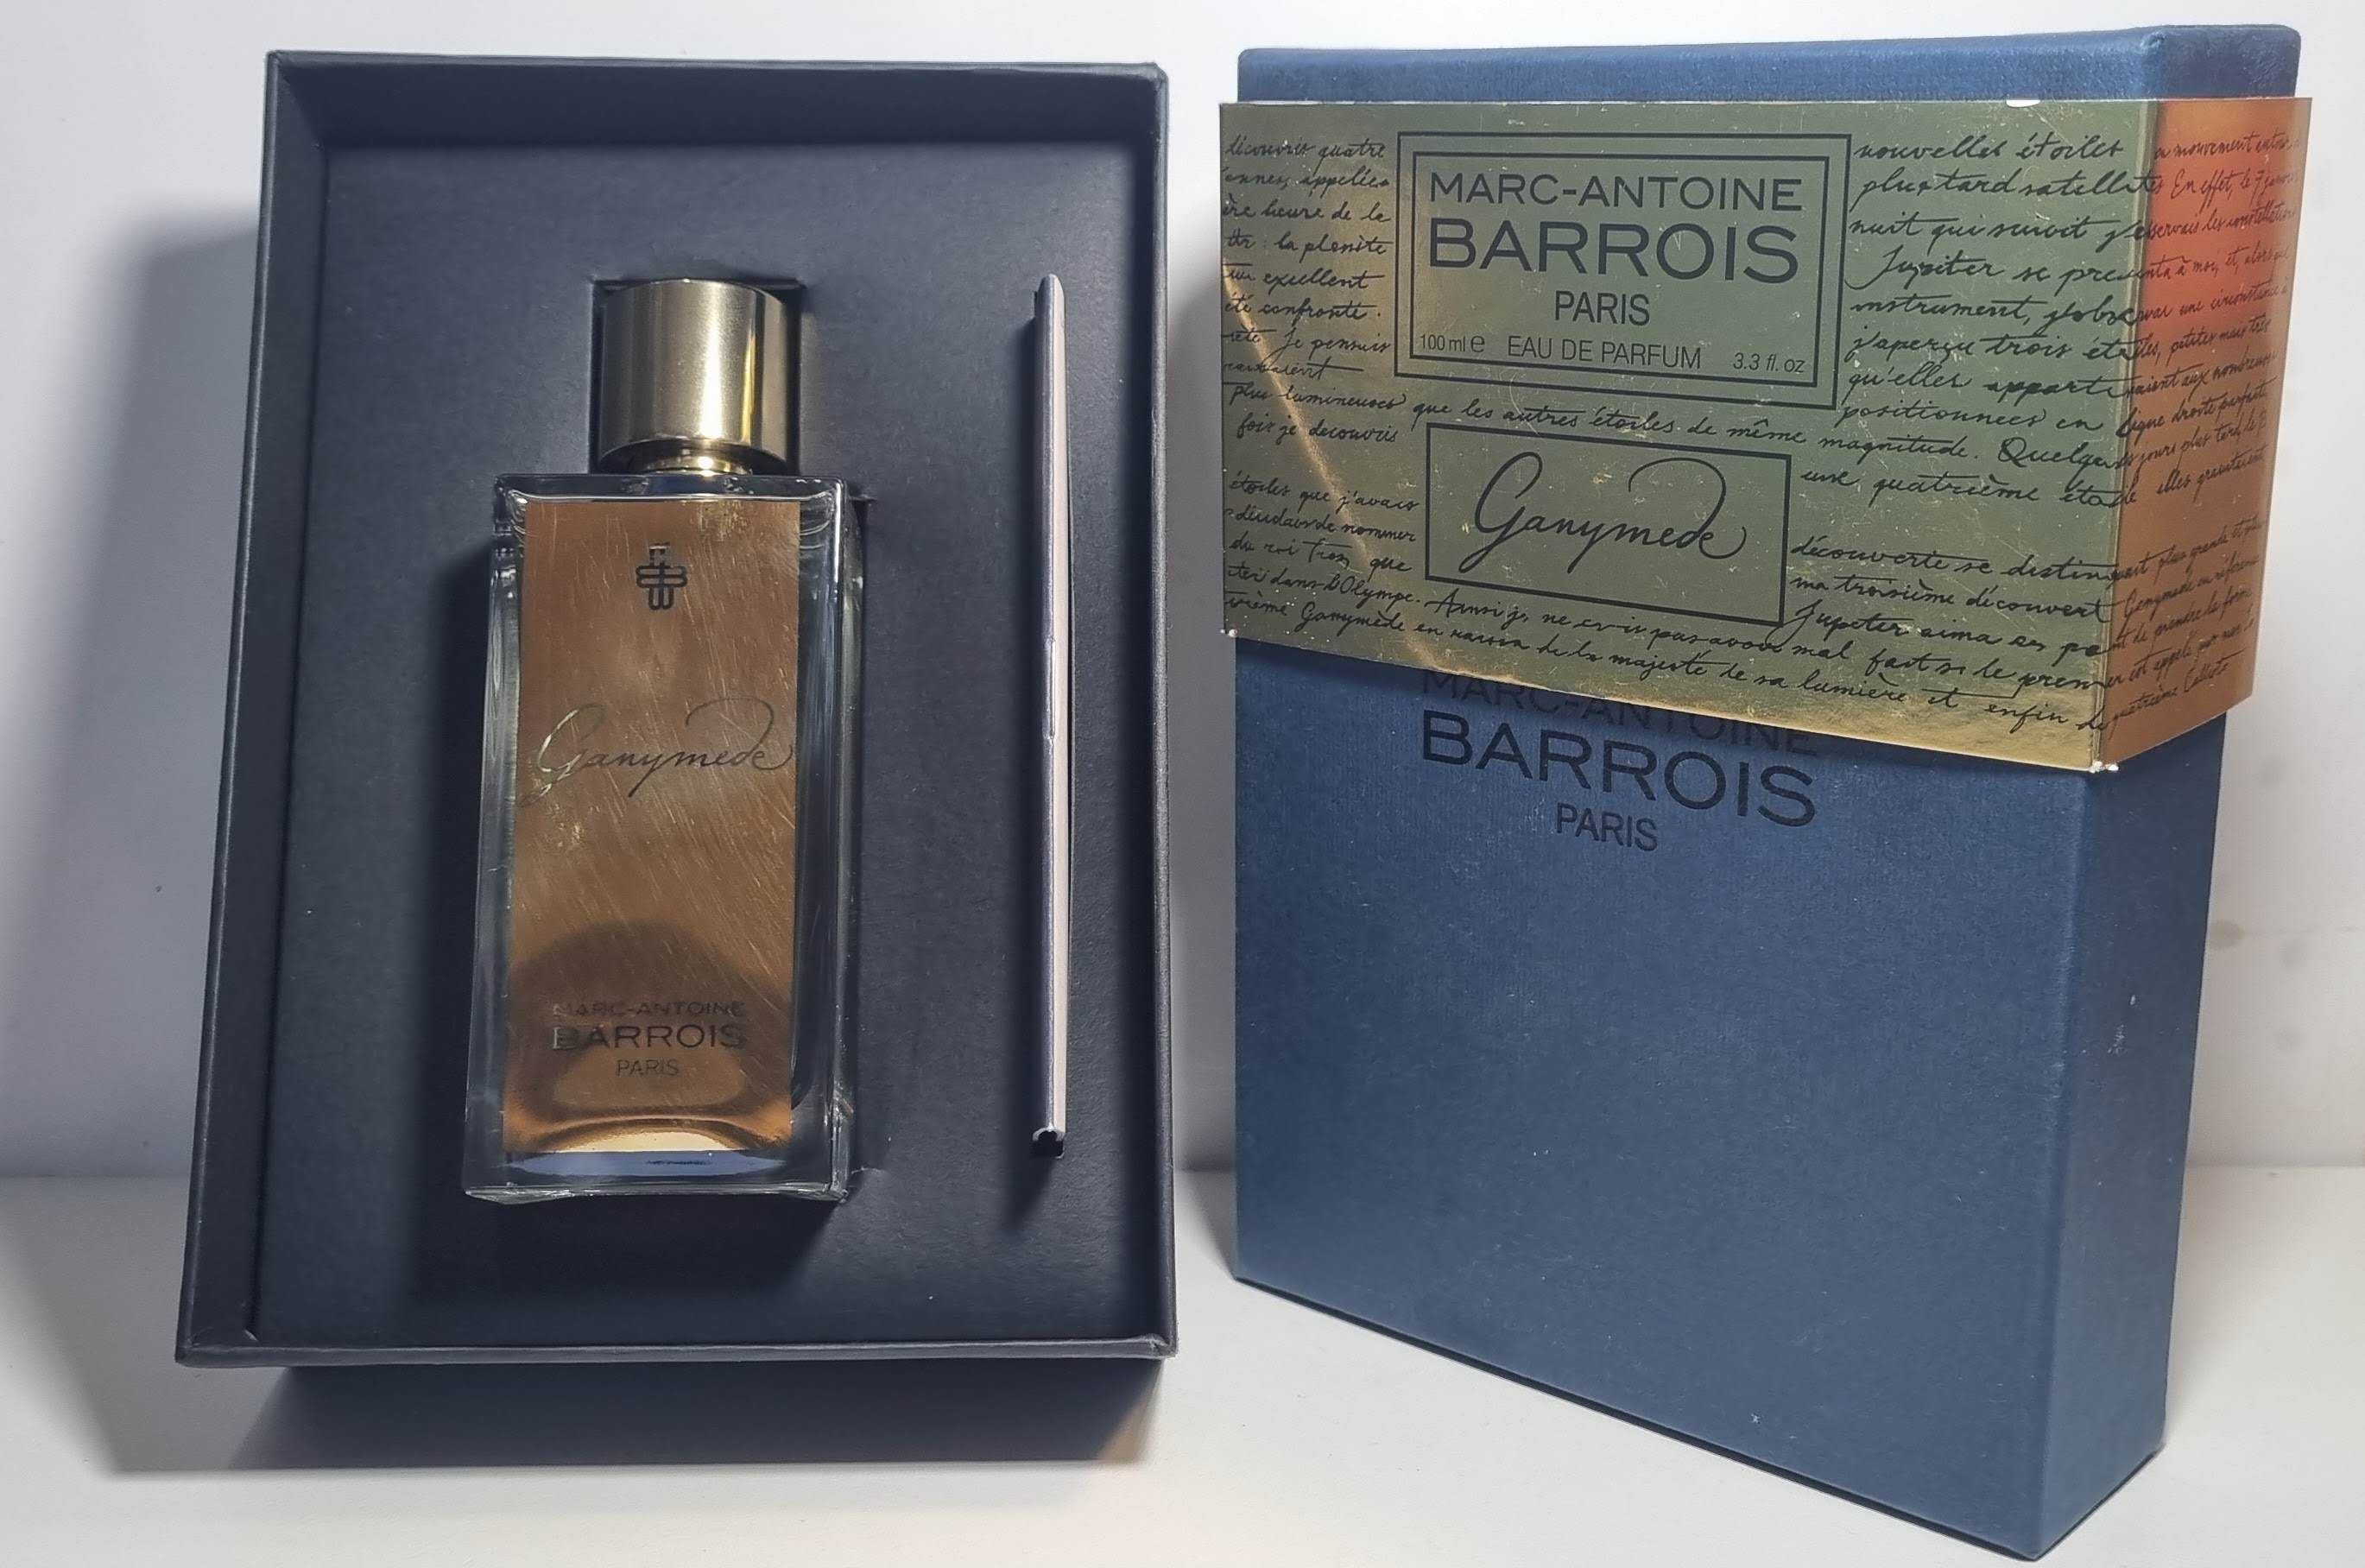 Parfum Marc Antoine Barrois - Ganymede, Eau de Parfum, 100ml